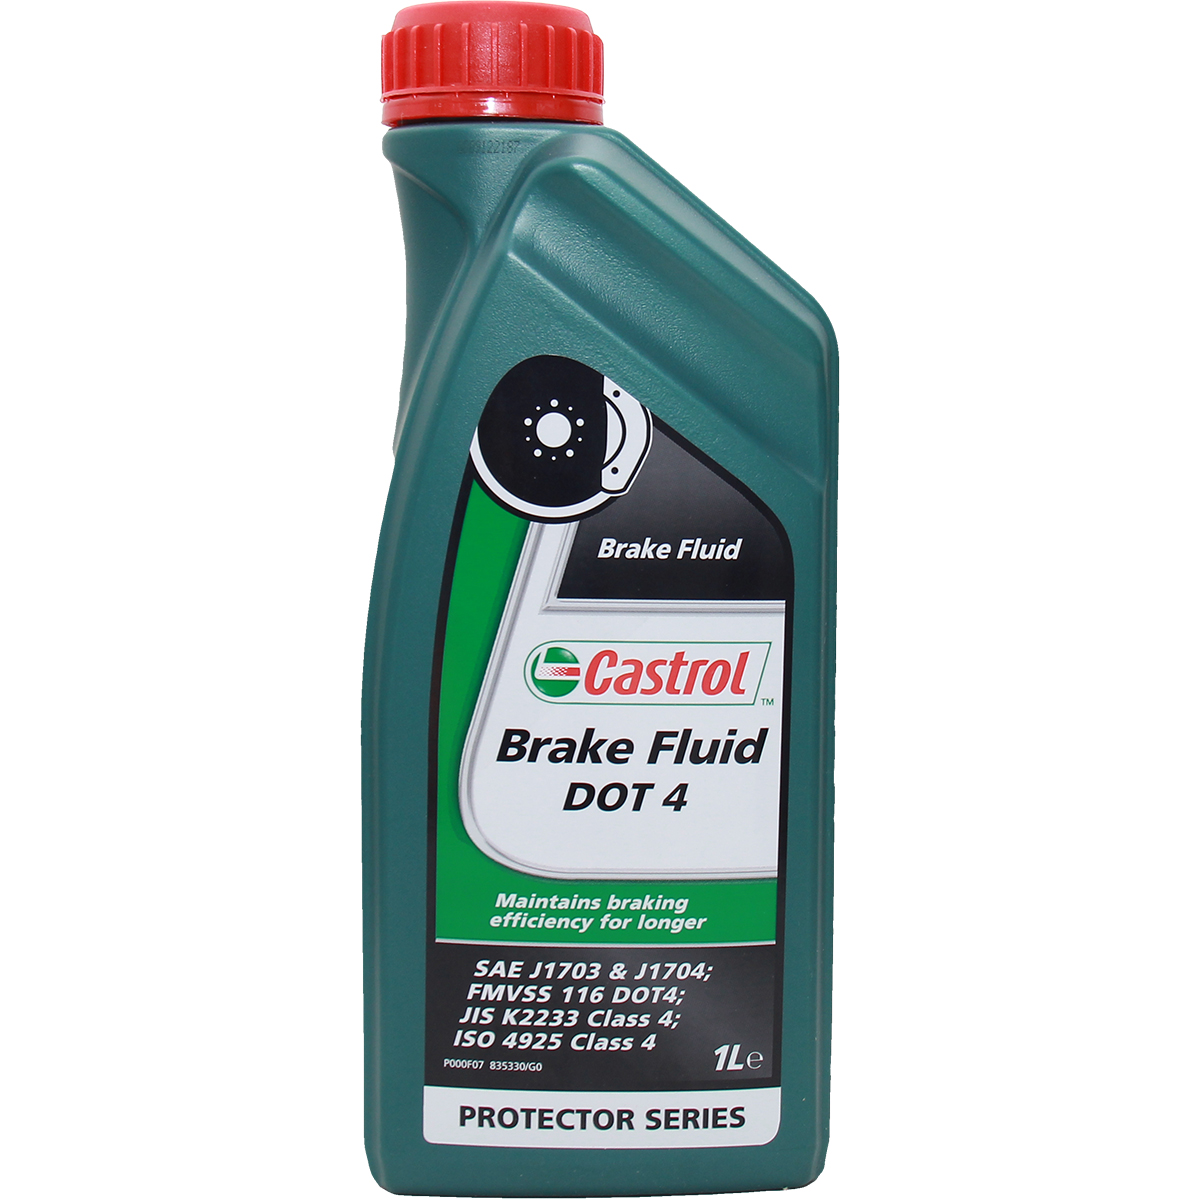 Castrol Brake Fluid DOT 4 1 Liter